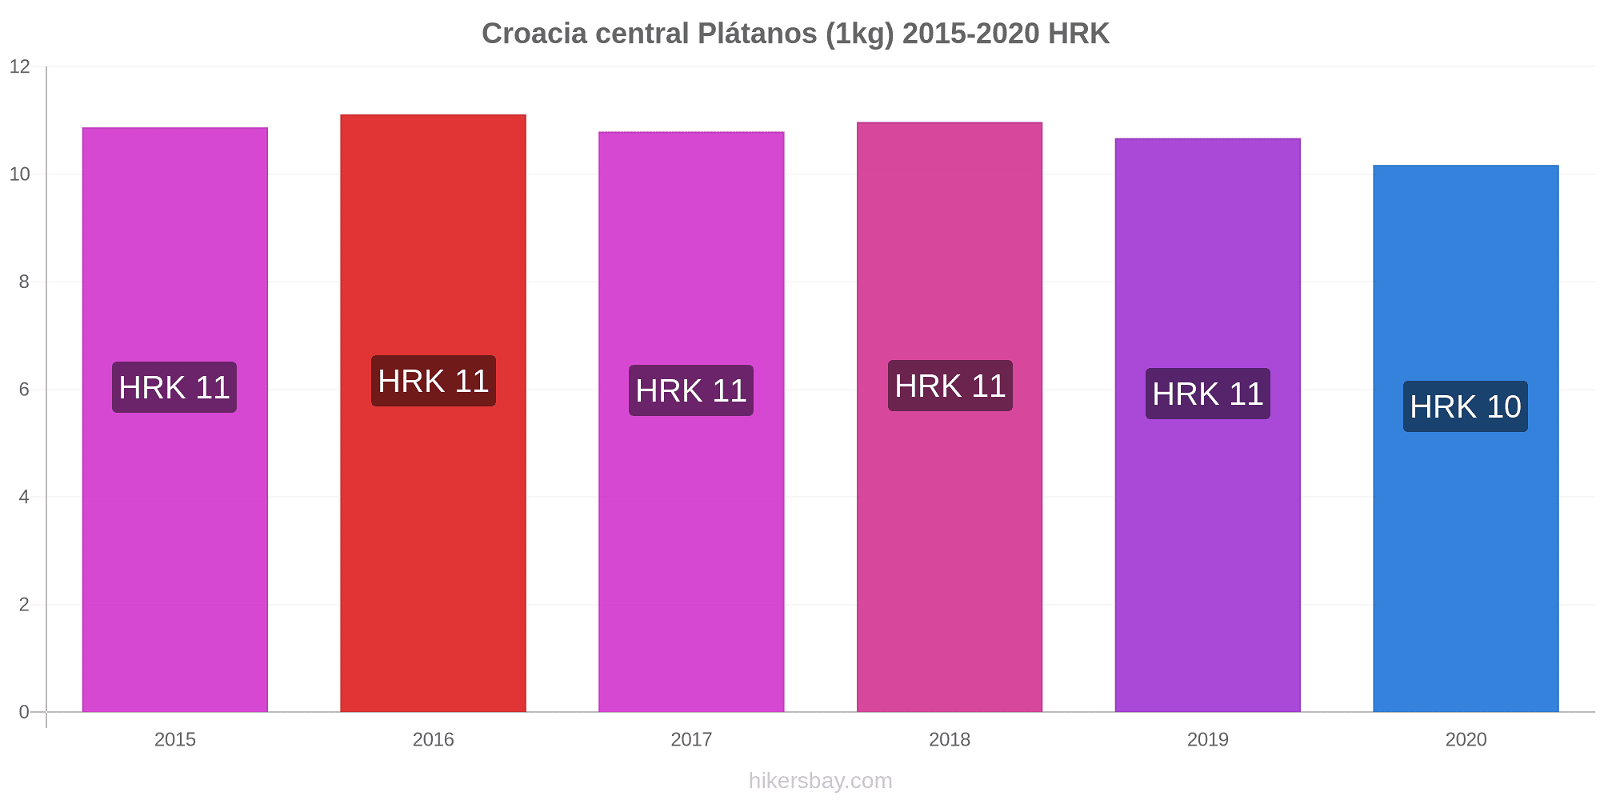 Croacia central cambios de precios Plátano (1kg) hikersbay.com